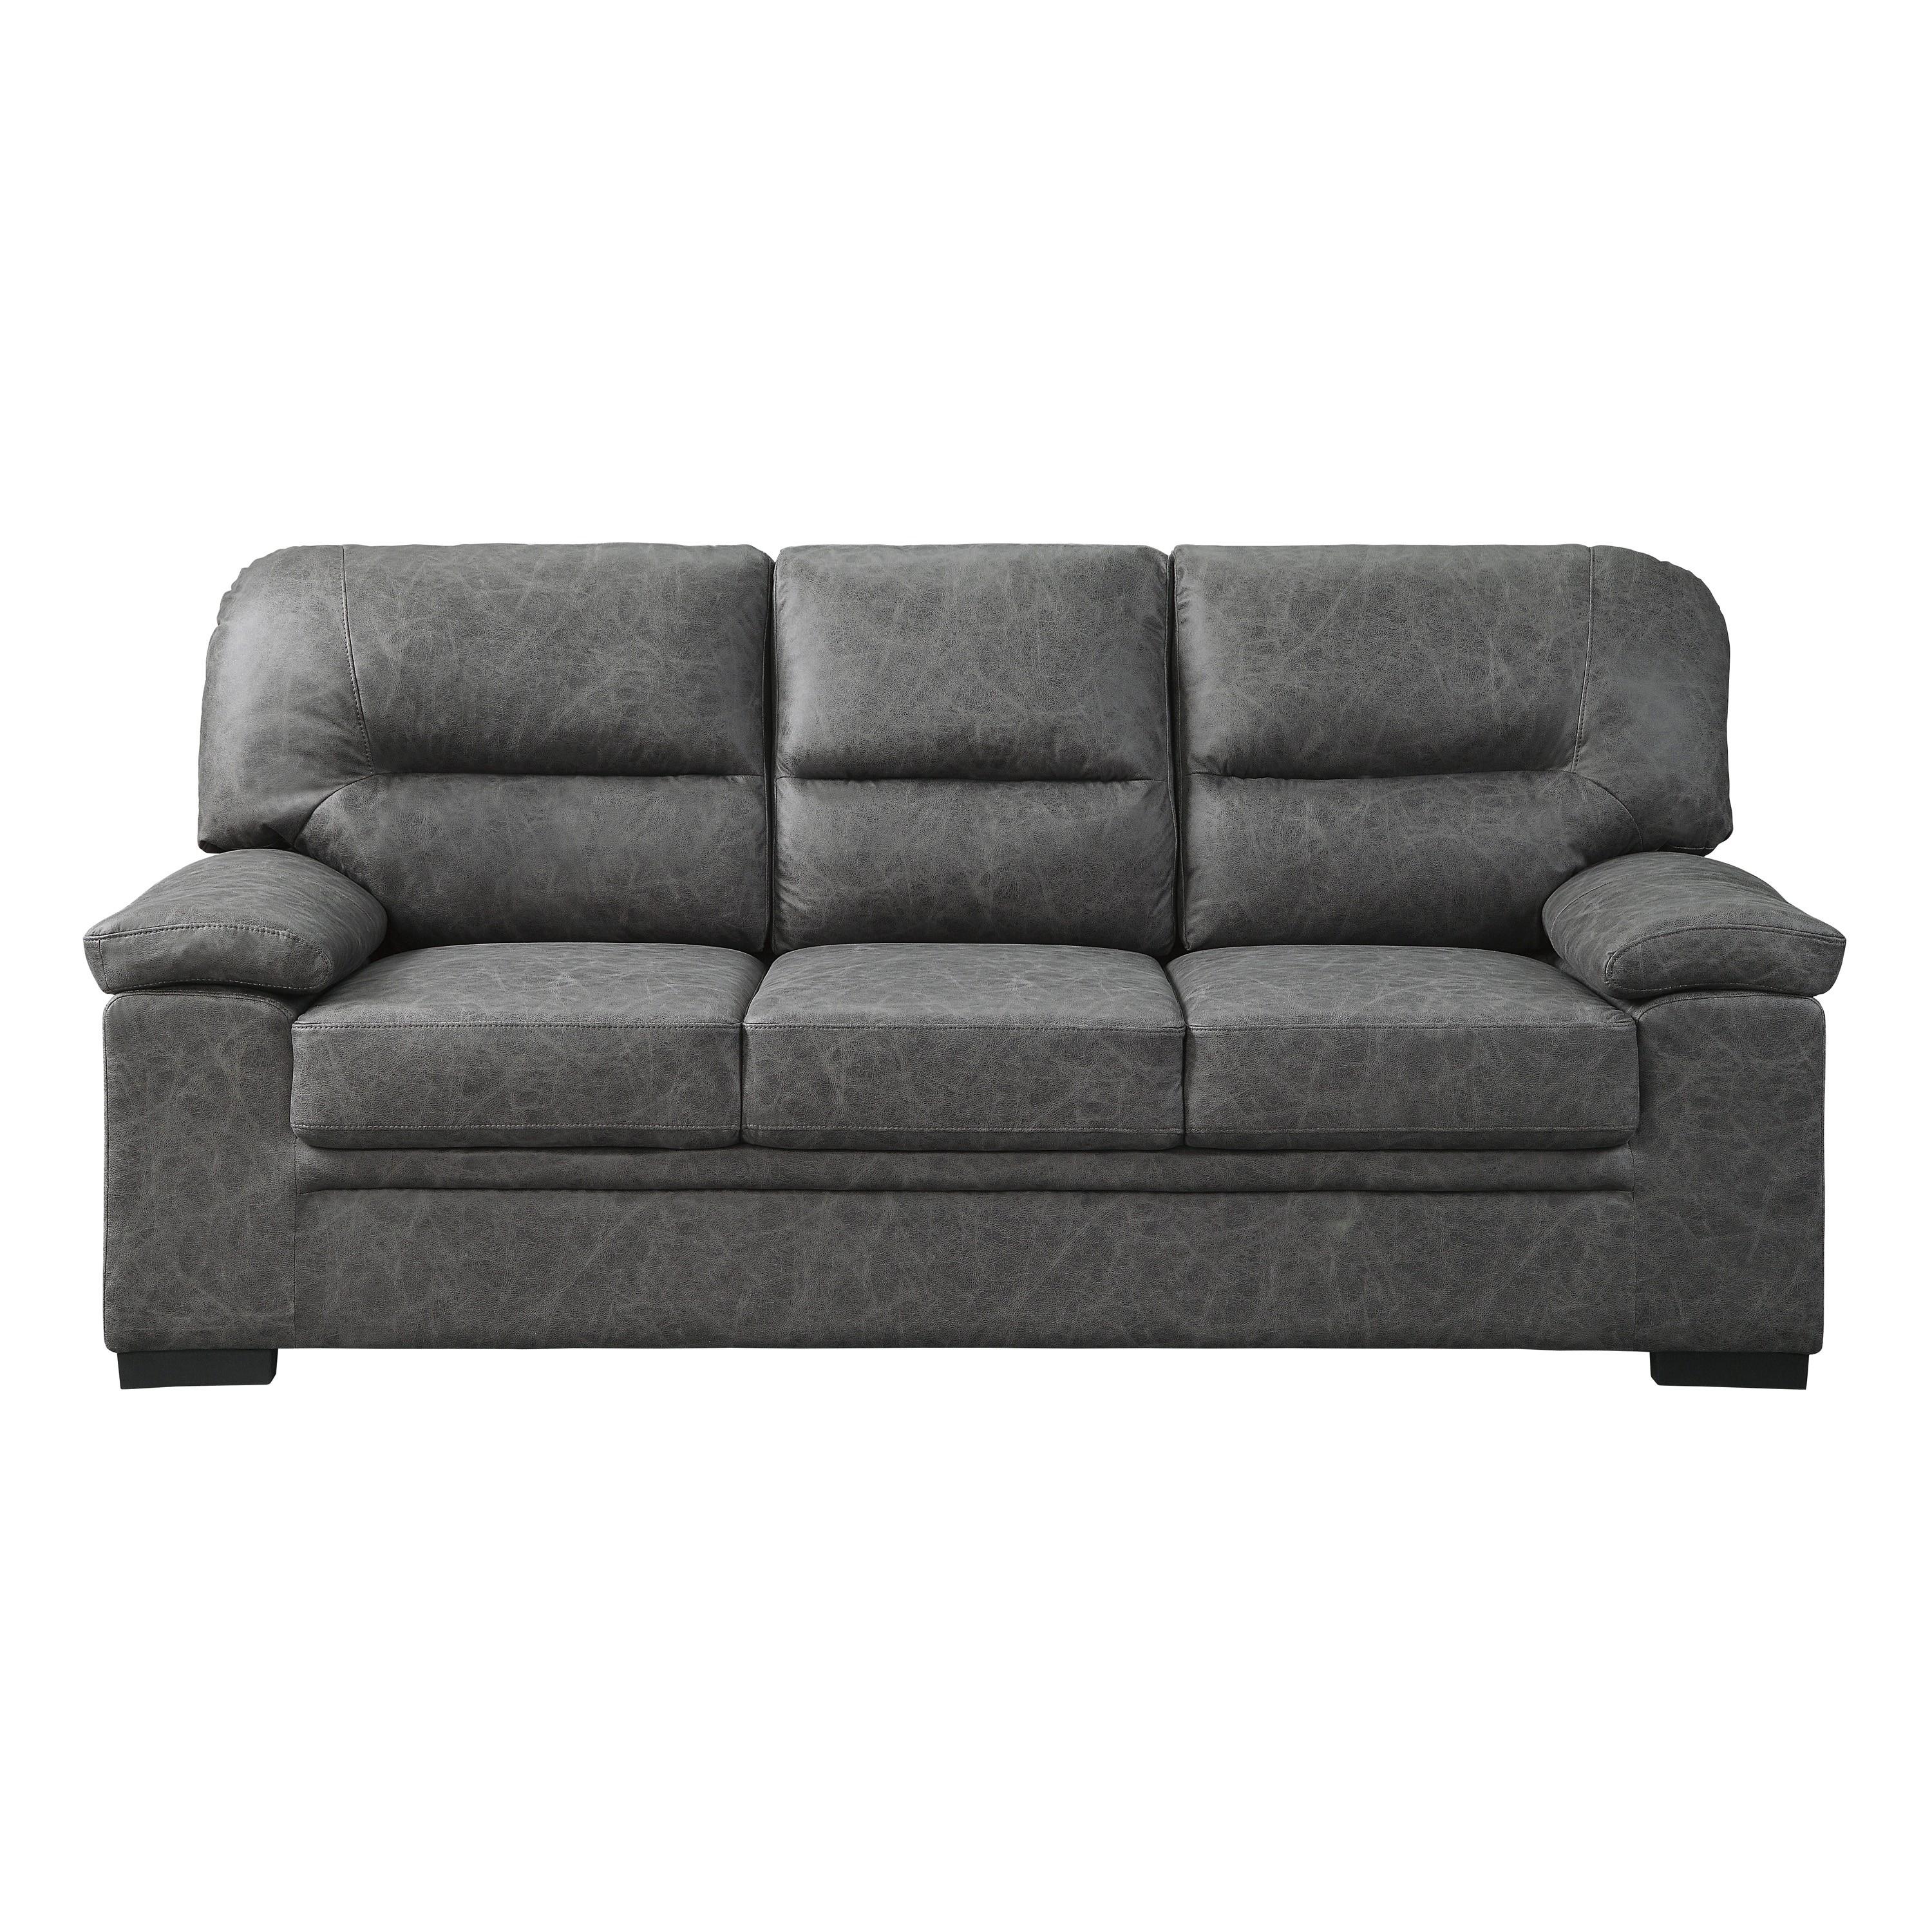 

    
Transitional Dark Gray Microfiber Sofa Homelegance 9407DG-3 Michigan
